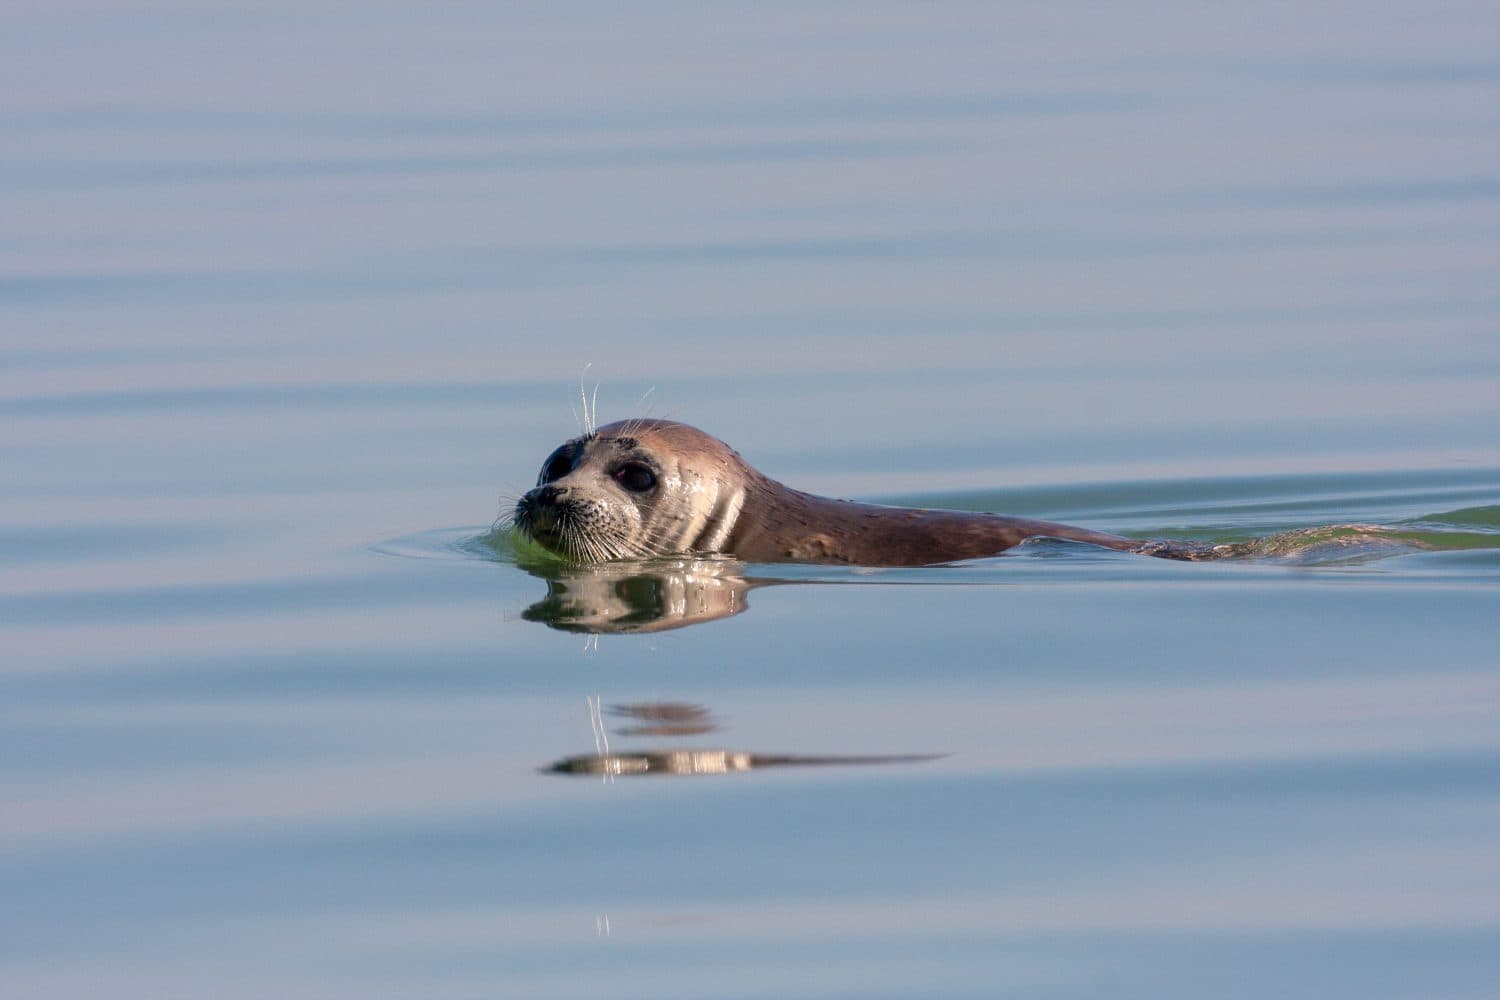 Caspian Seal (Pusa caspica) swimming in the Caspian sea in Iran.